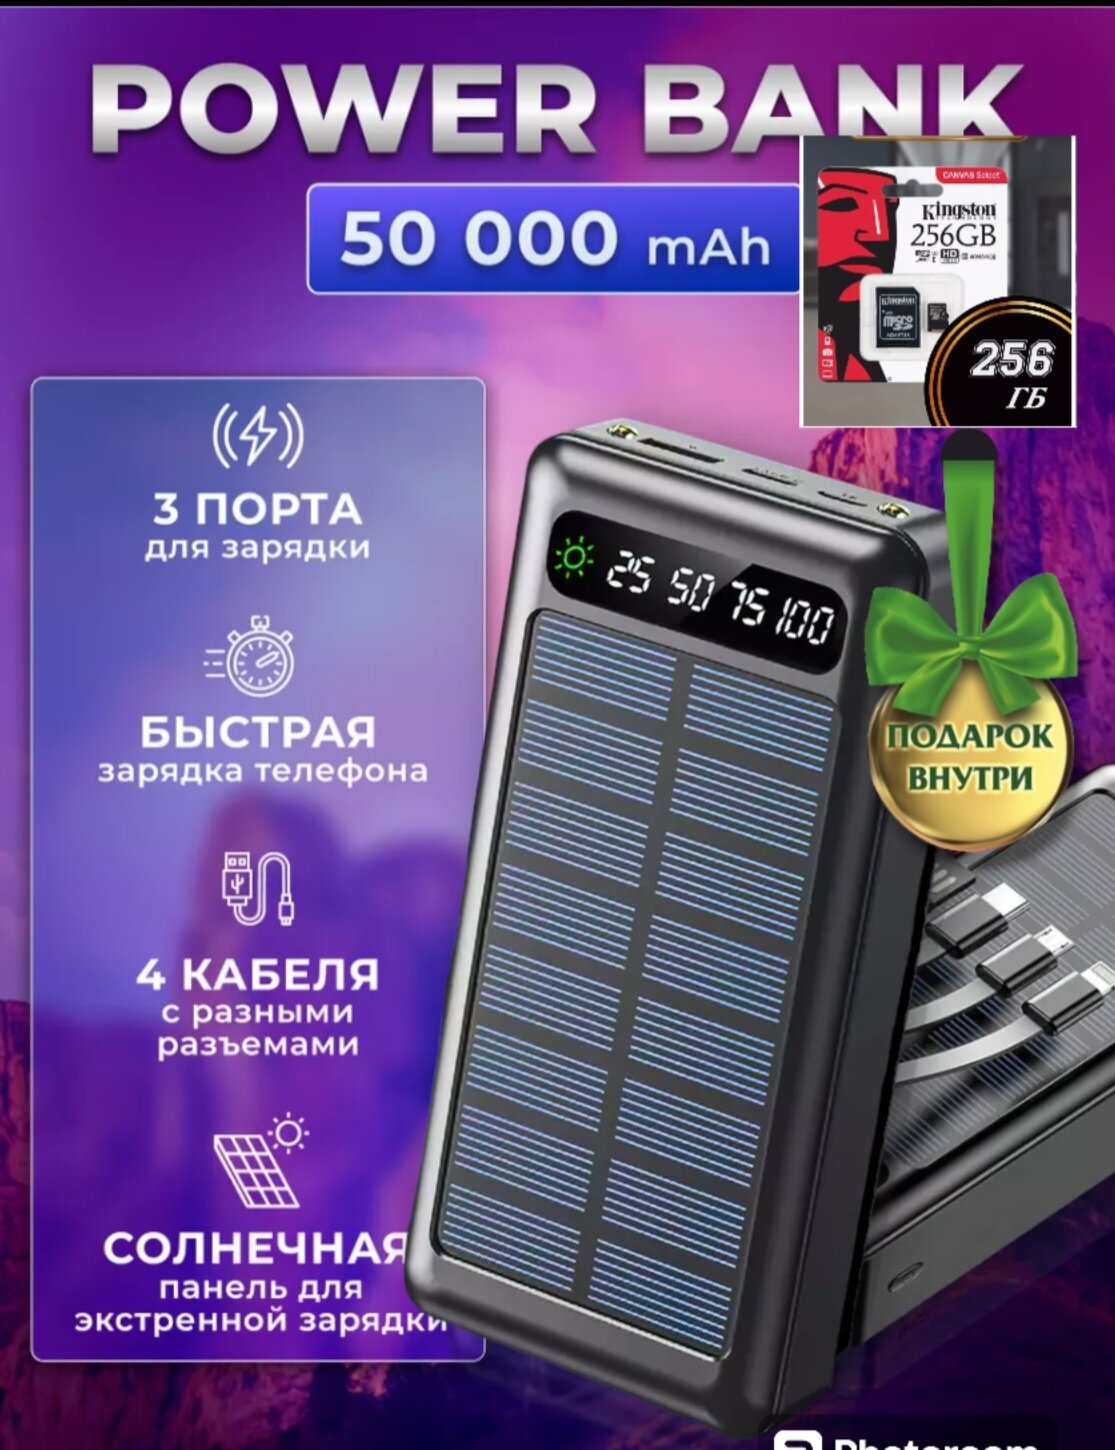 Универсальный Powerbank 50000 mAh со встроенными кабелями, солнечная батарея/Power bank solar energy/ внешний аккумулятор